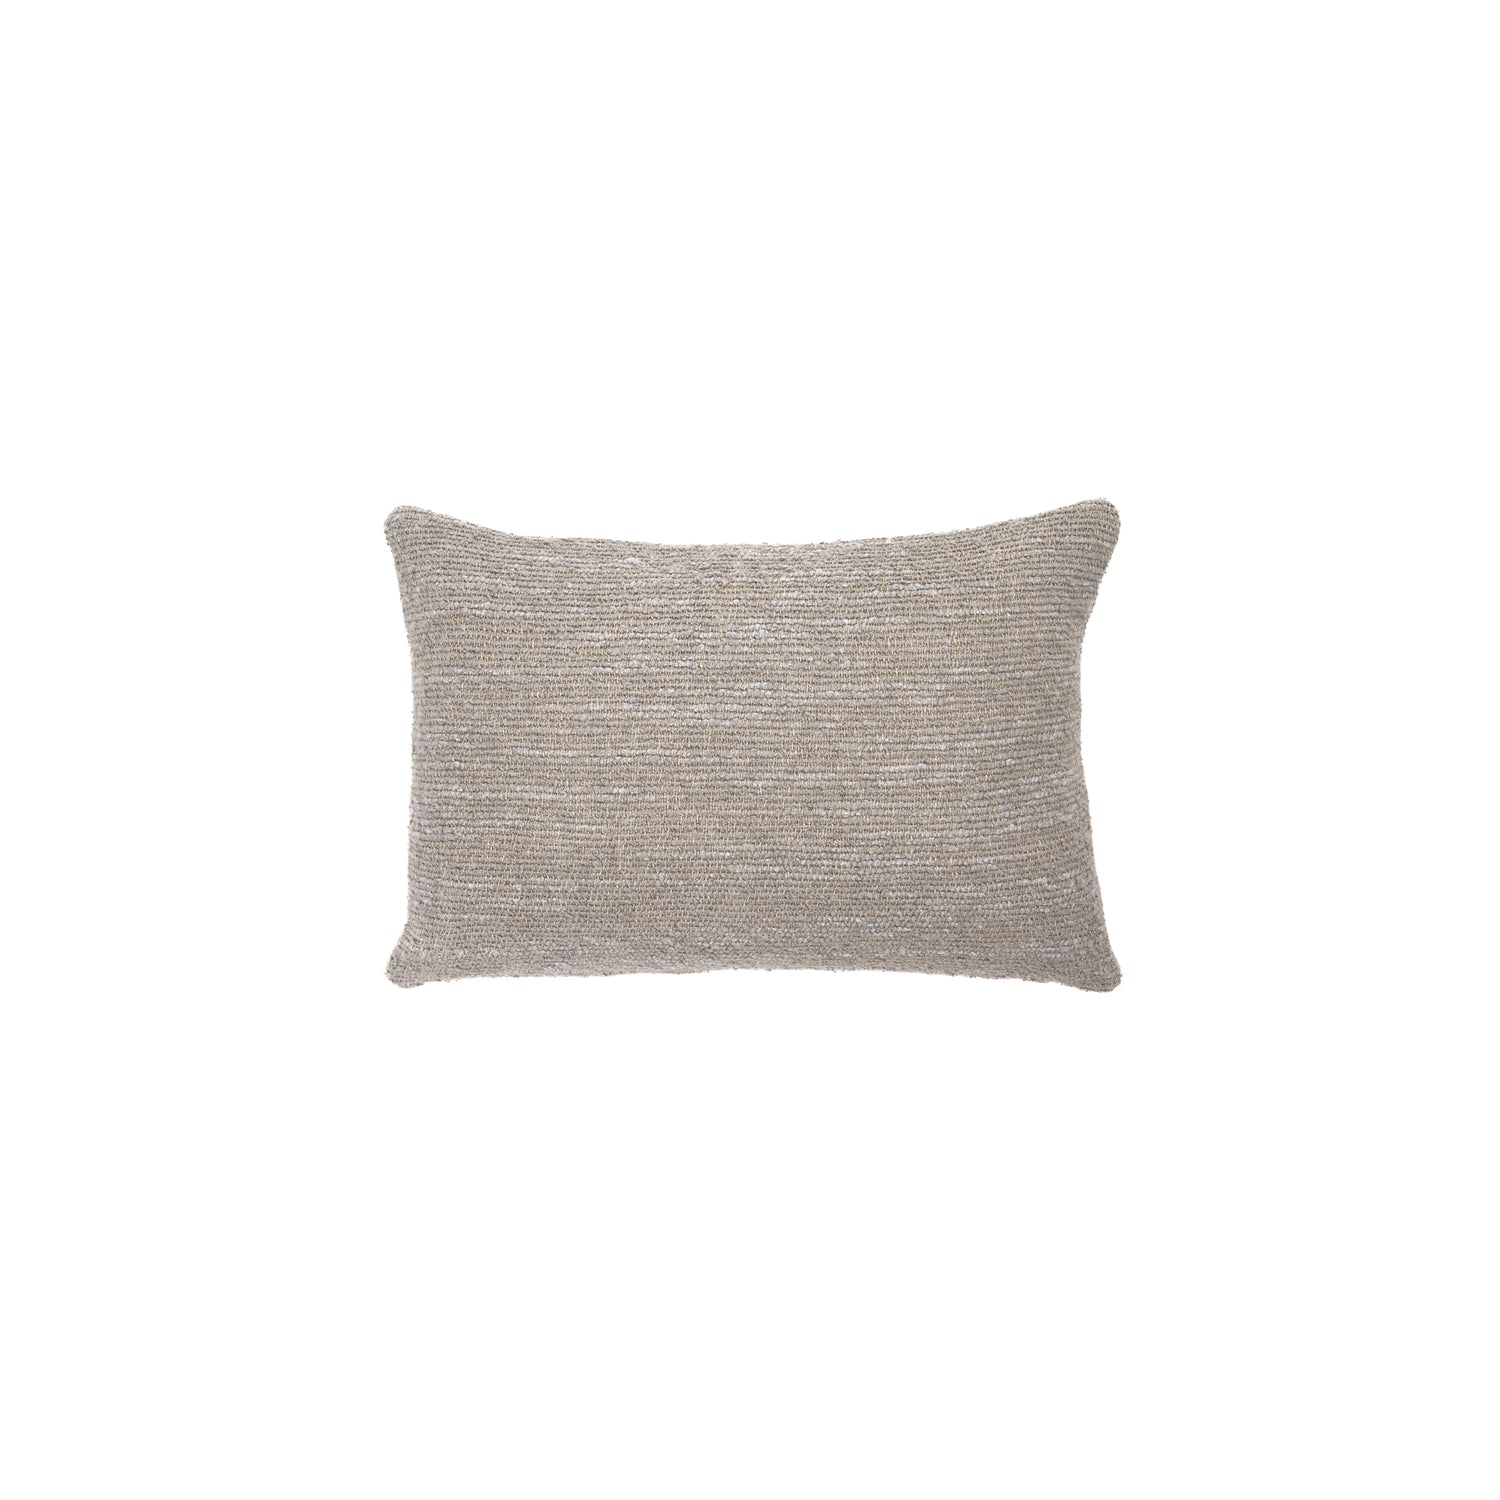 Nomad Lumbar Pillow, Set of 2, Silver